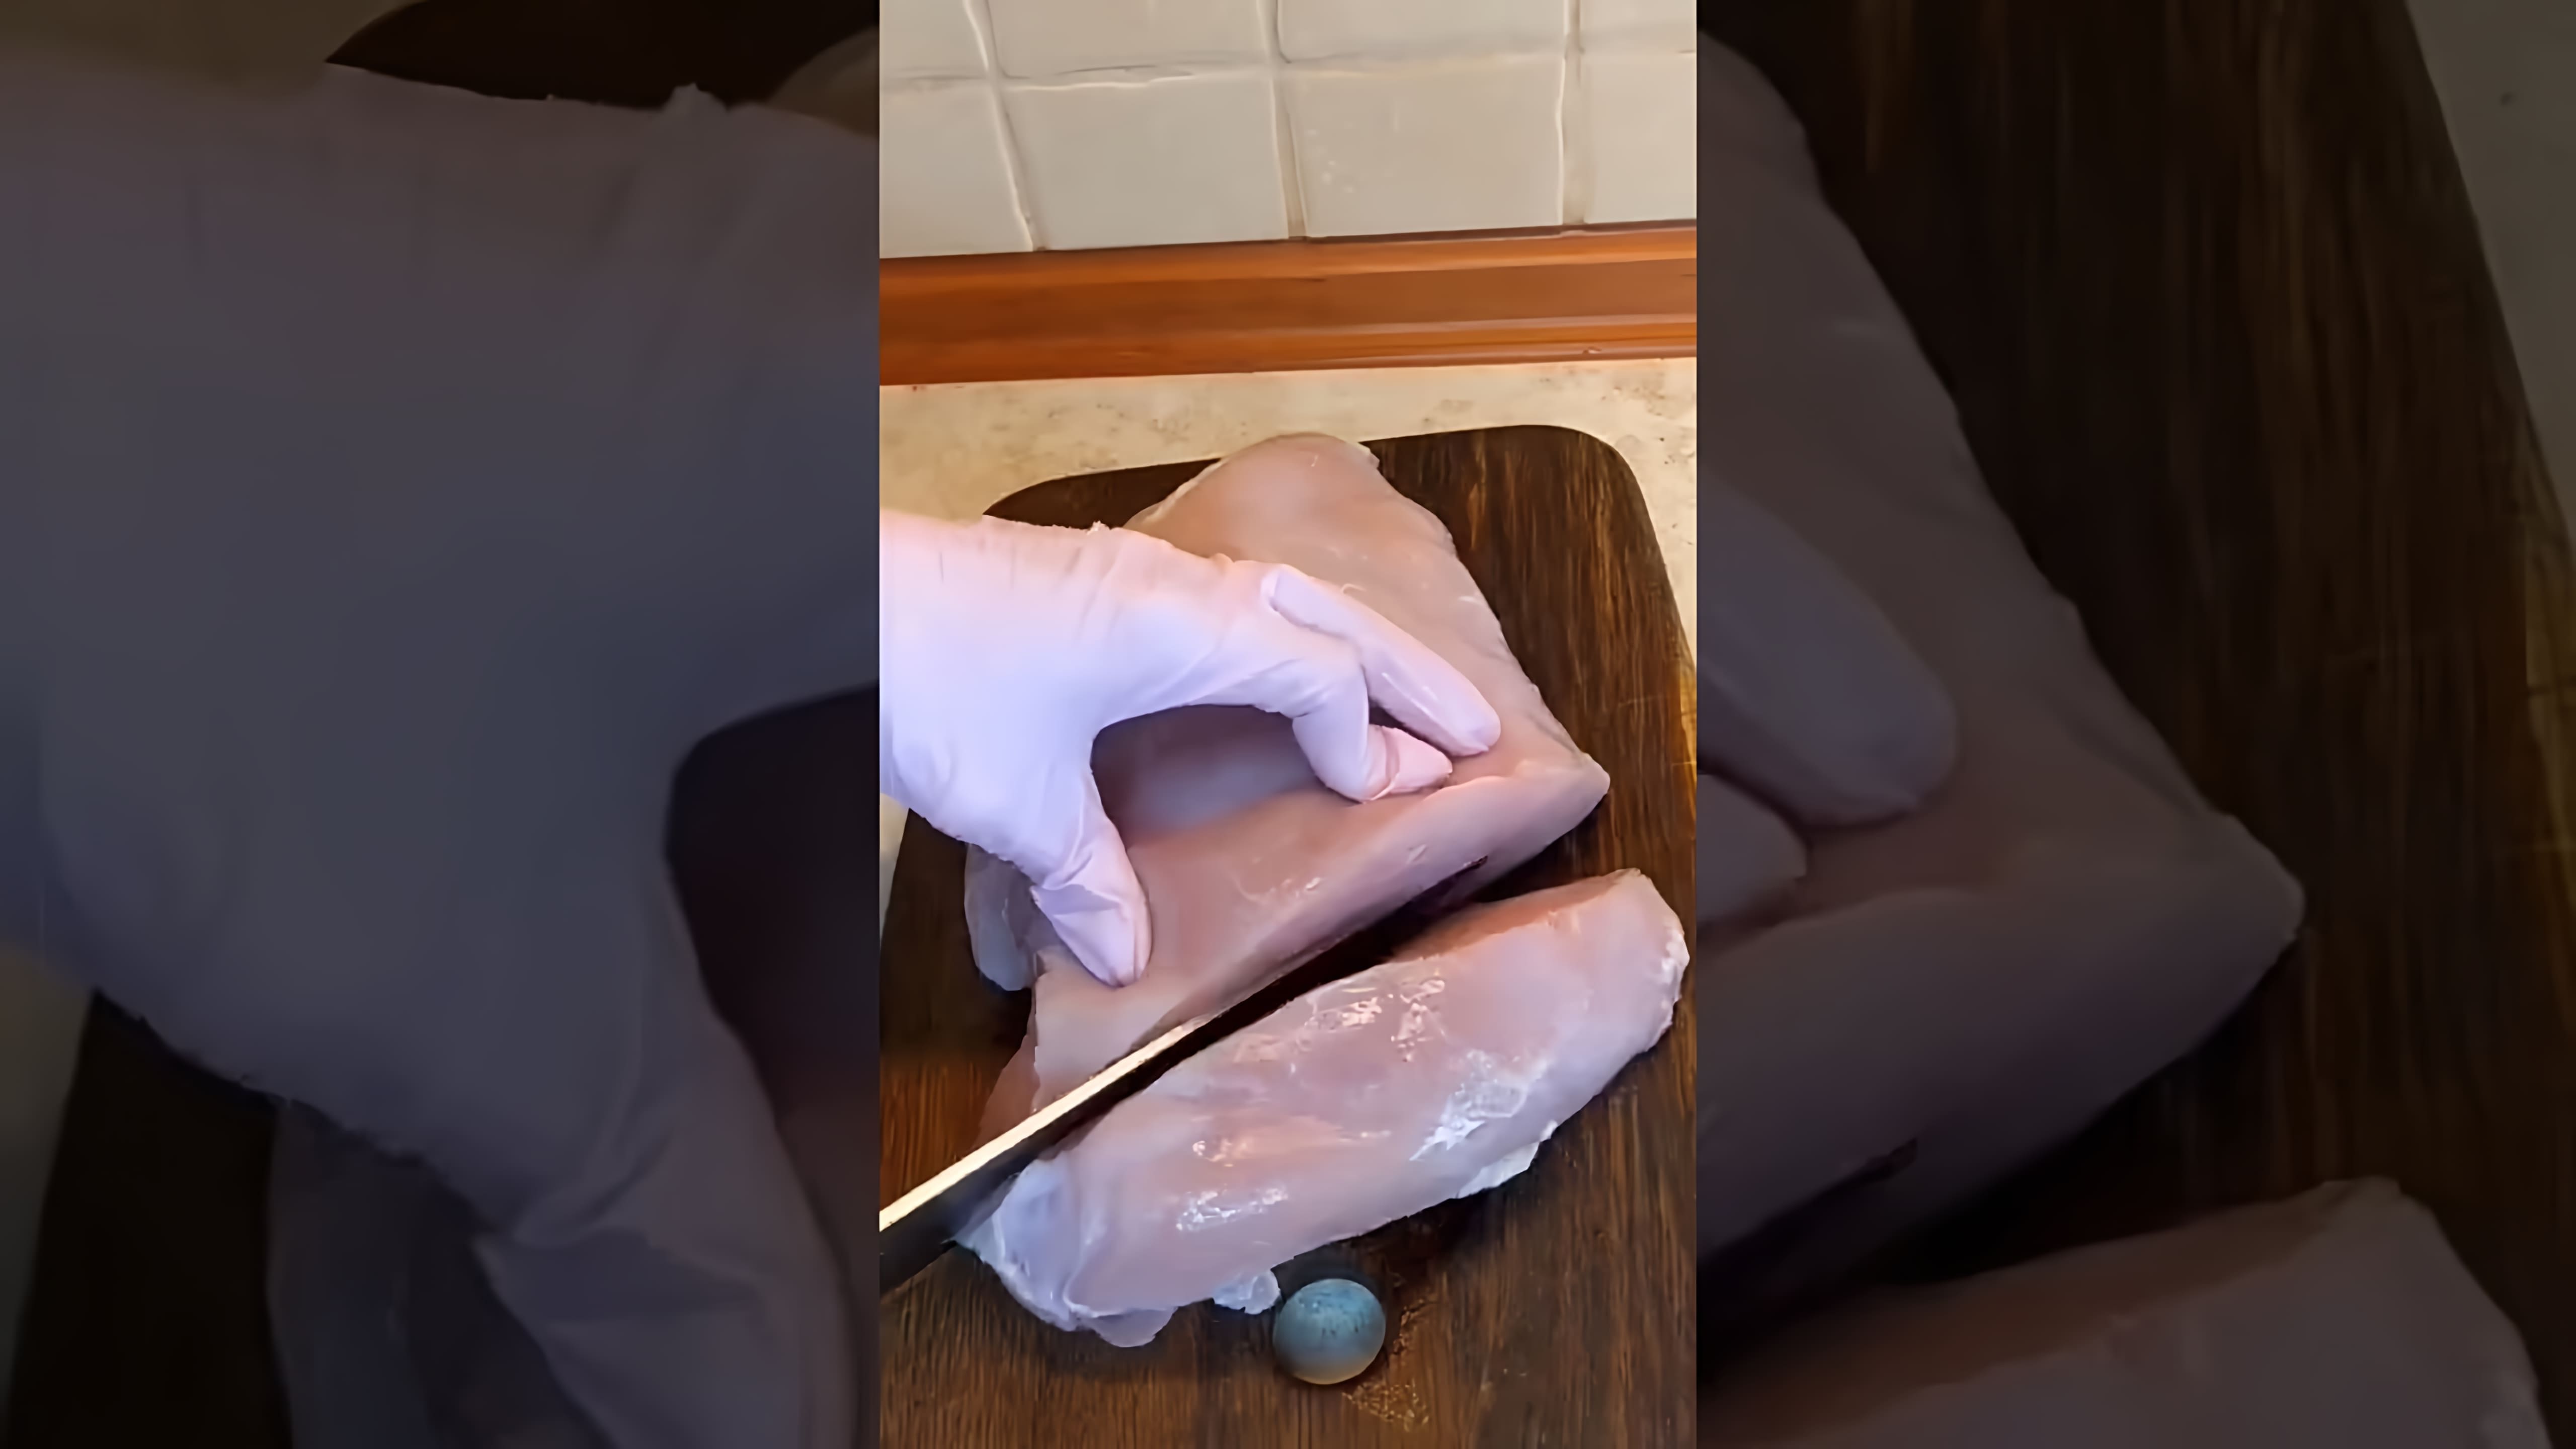 В этом видео демонстрируется рецепт приготовления шашлыка из филе индейки на мангале